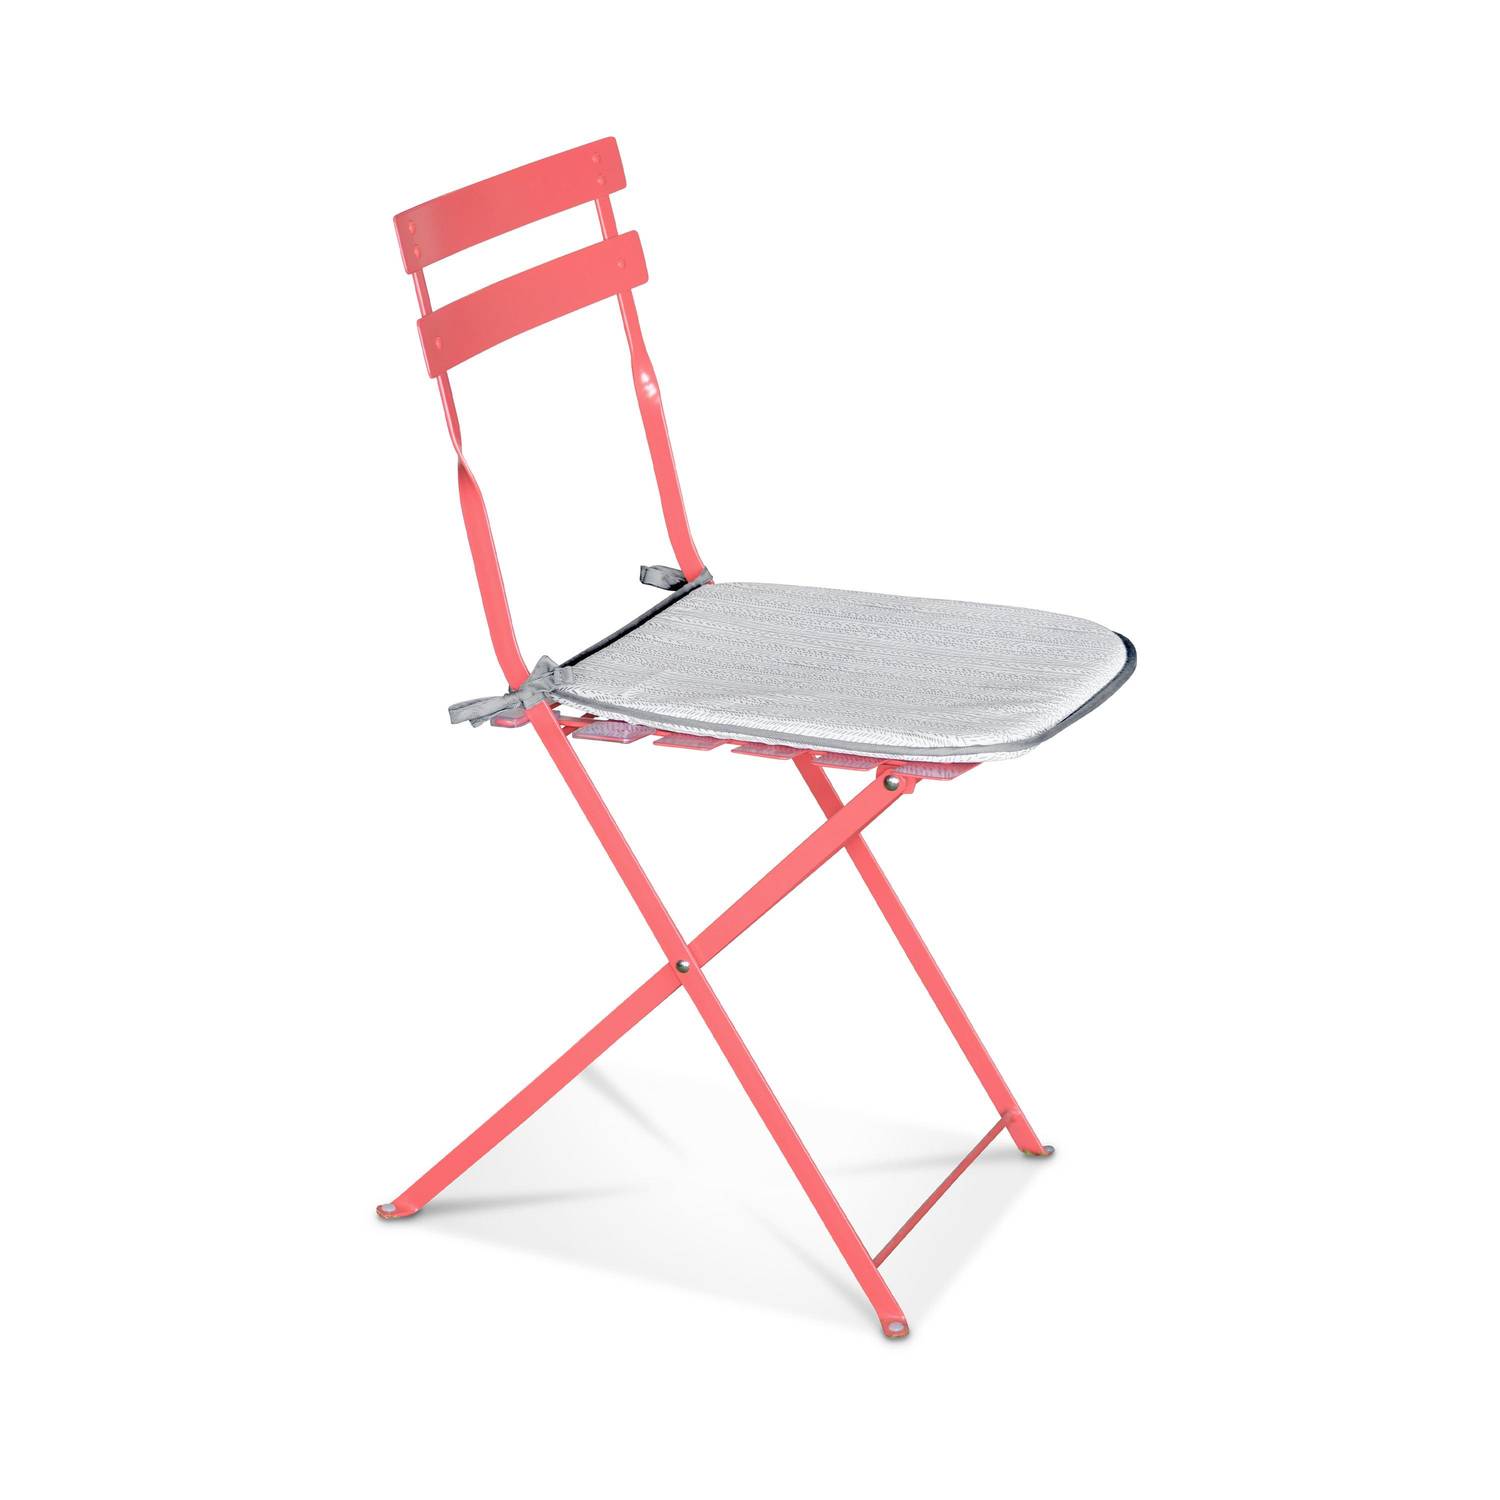 Conjunto de 4 cojines para silla - 40 x 40cm - Cojín reversible Estampado en espiga/color liso, asiento con cierre de nudo, bordes con trenza Photo2